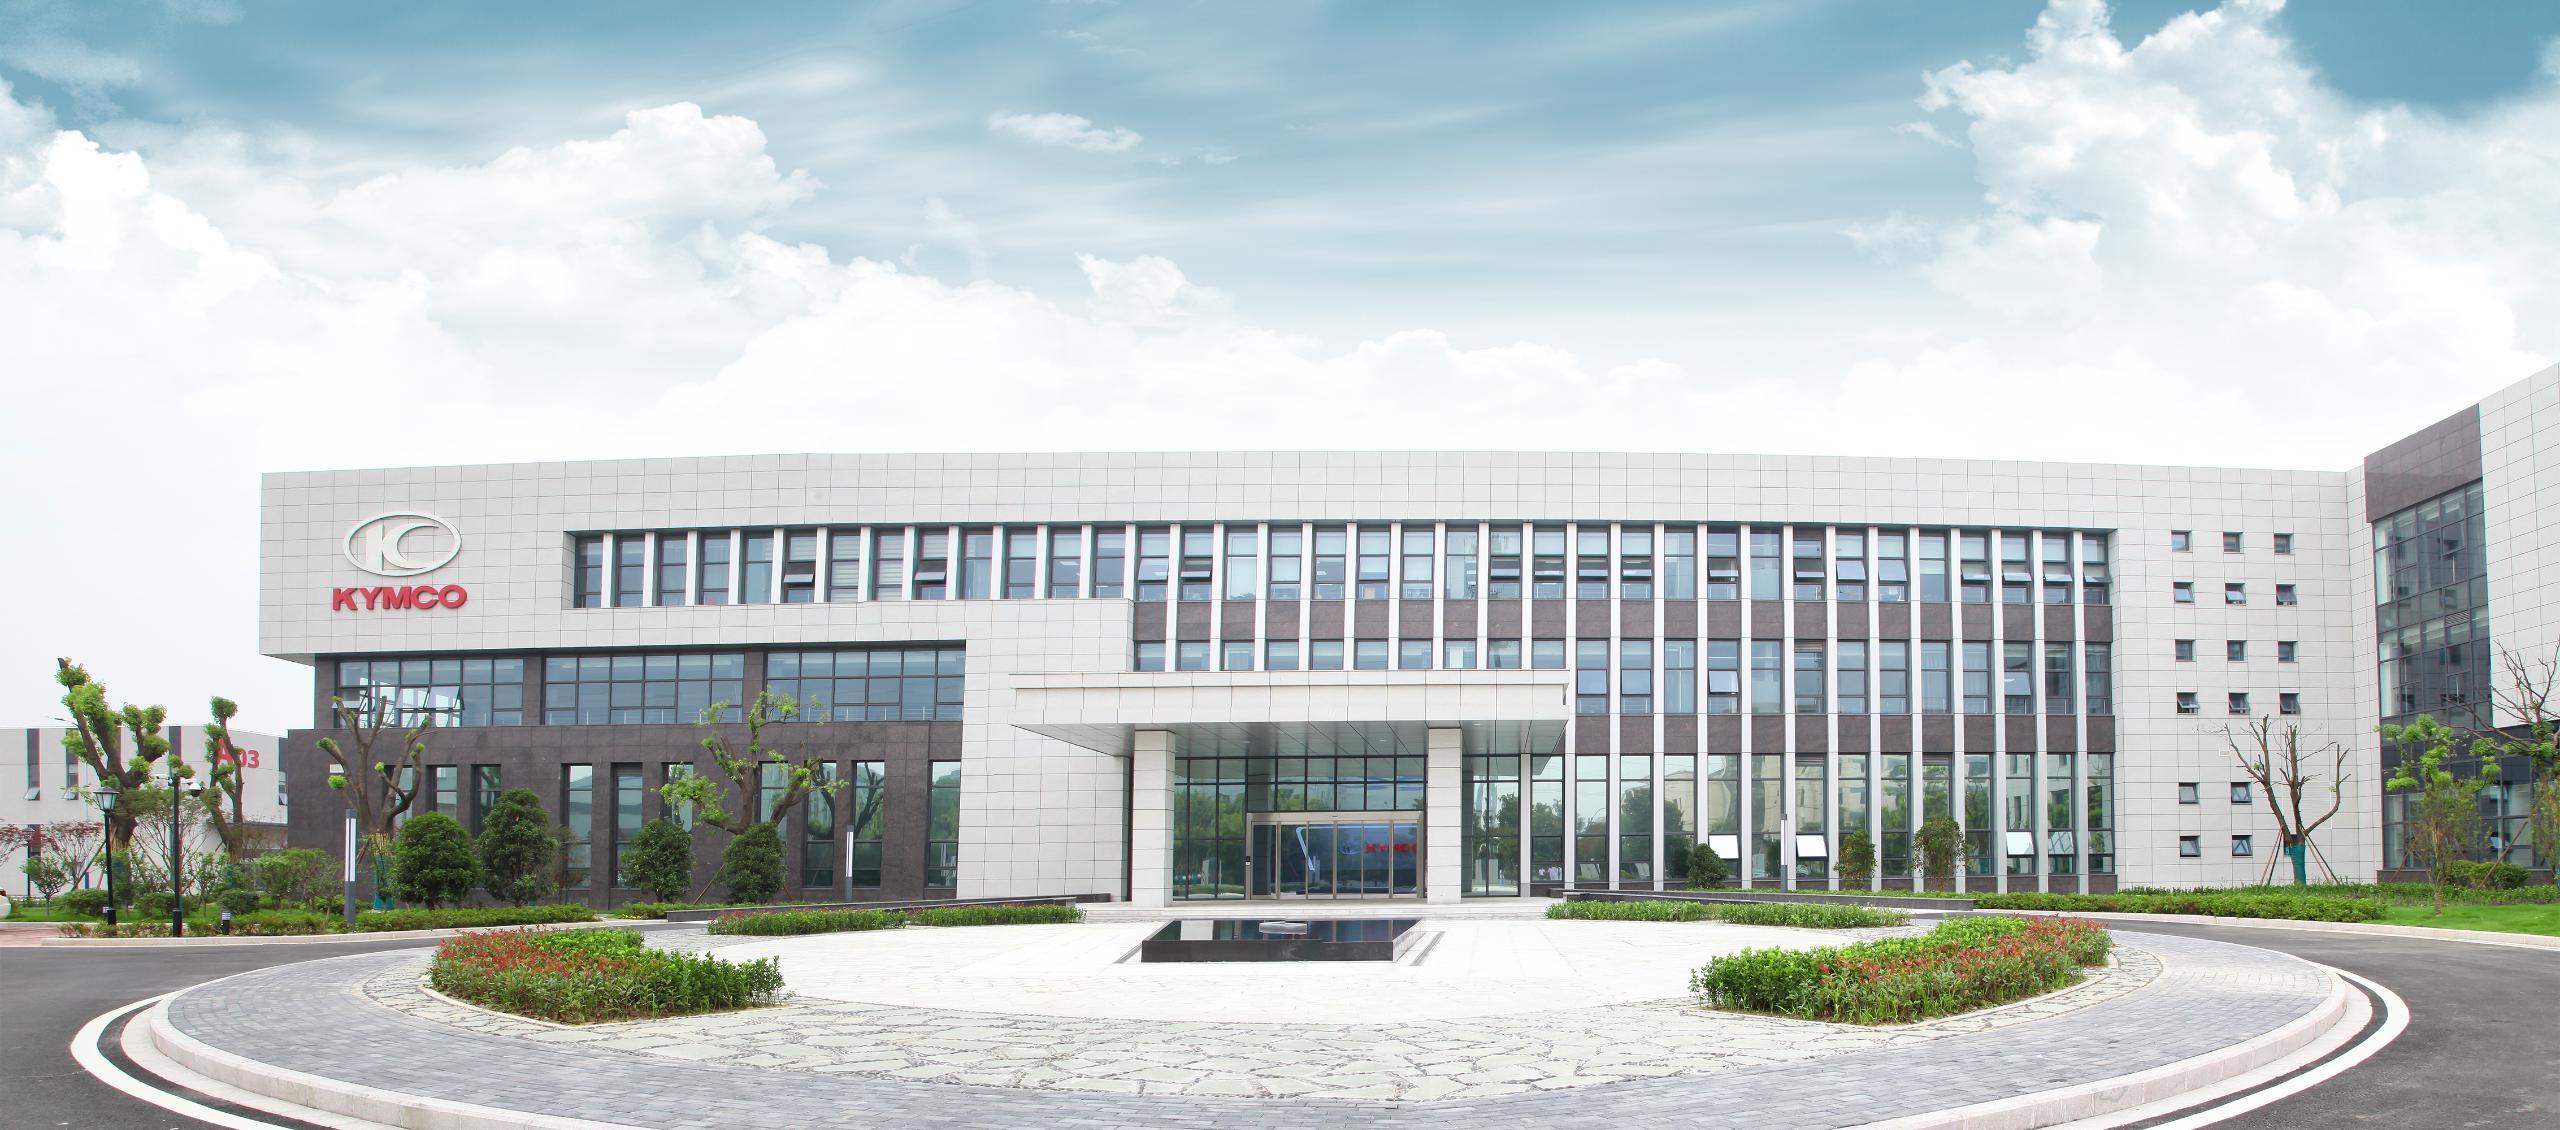 Con este nuevo centro, KYMCO Changzhou, la marca suma 5 plantas de producción en el mundo y 6 plantas de ensamblaje. KYMCO Global